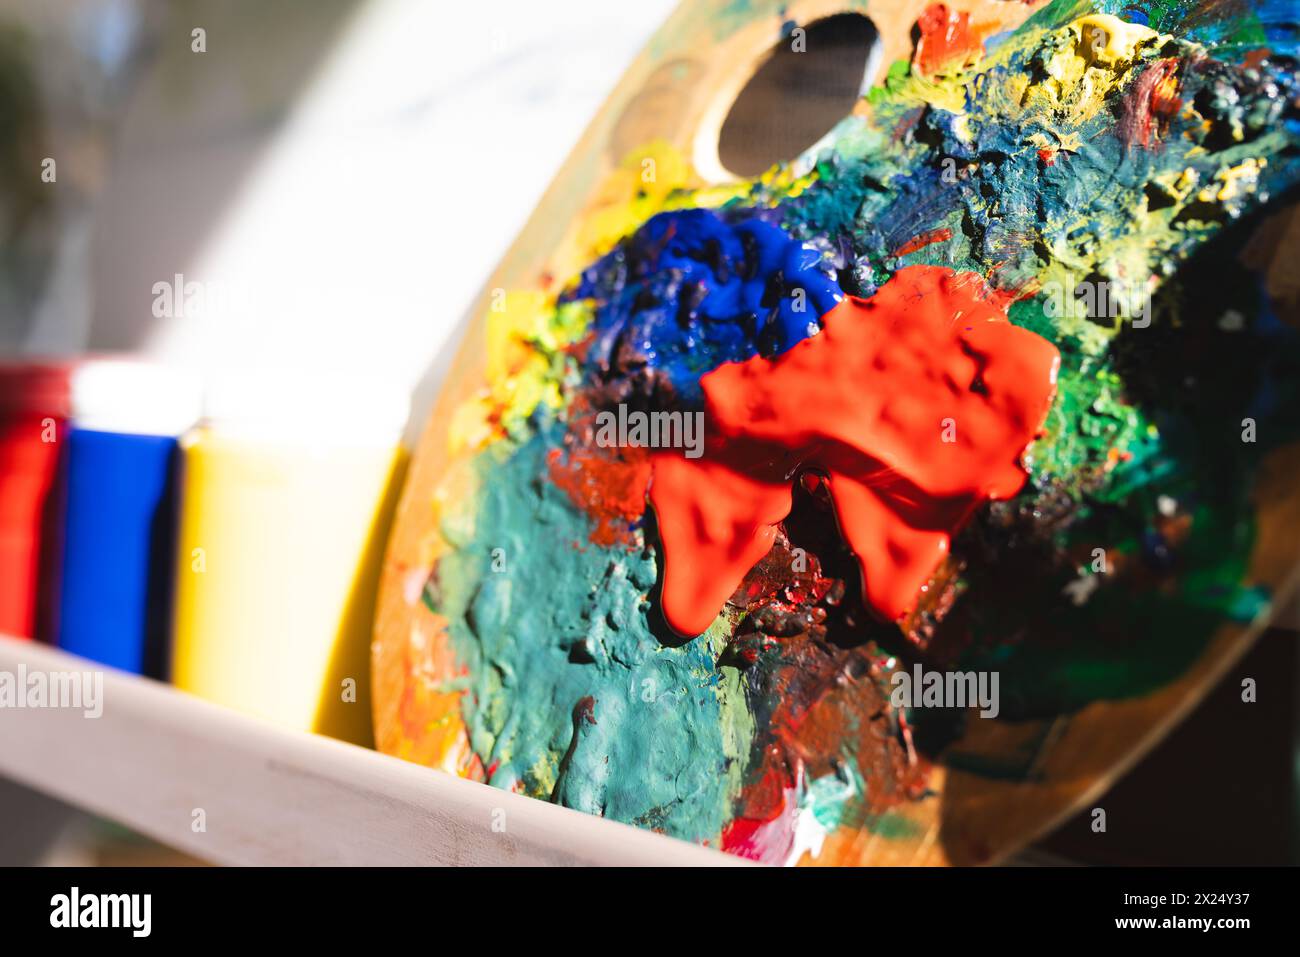 Les couleurs vives de peinture se fondent sur une palette bien utilisée à la maison, faisant allusion à la créativité en cours Banque D'Images